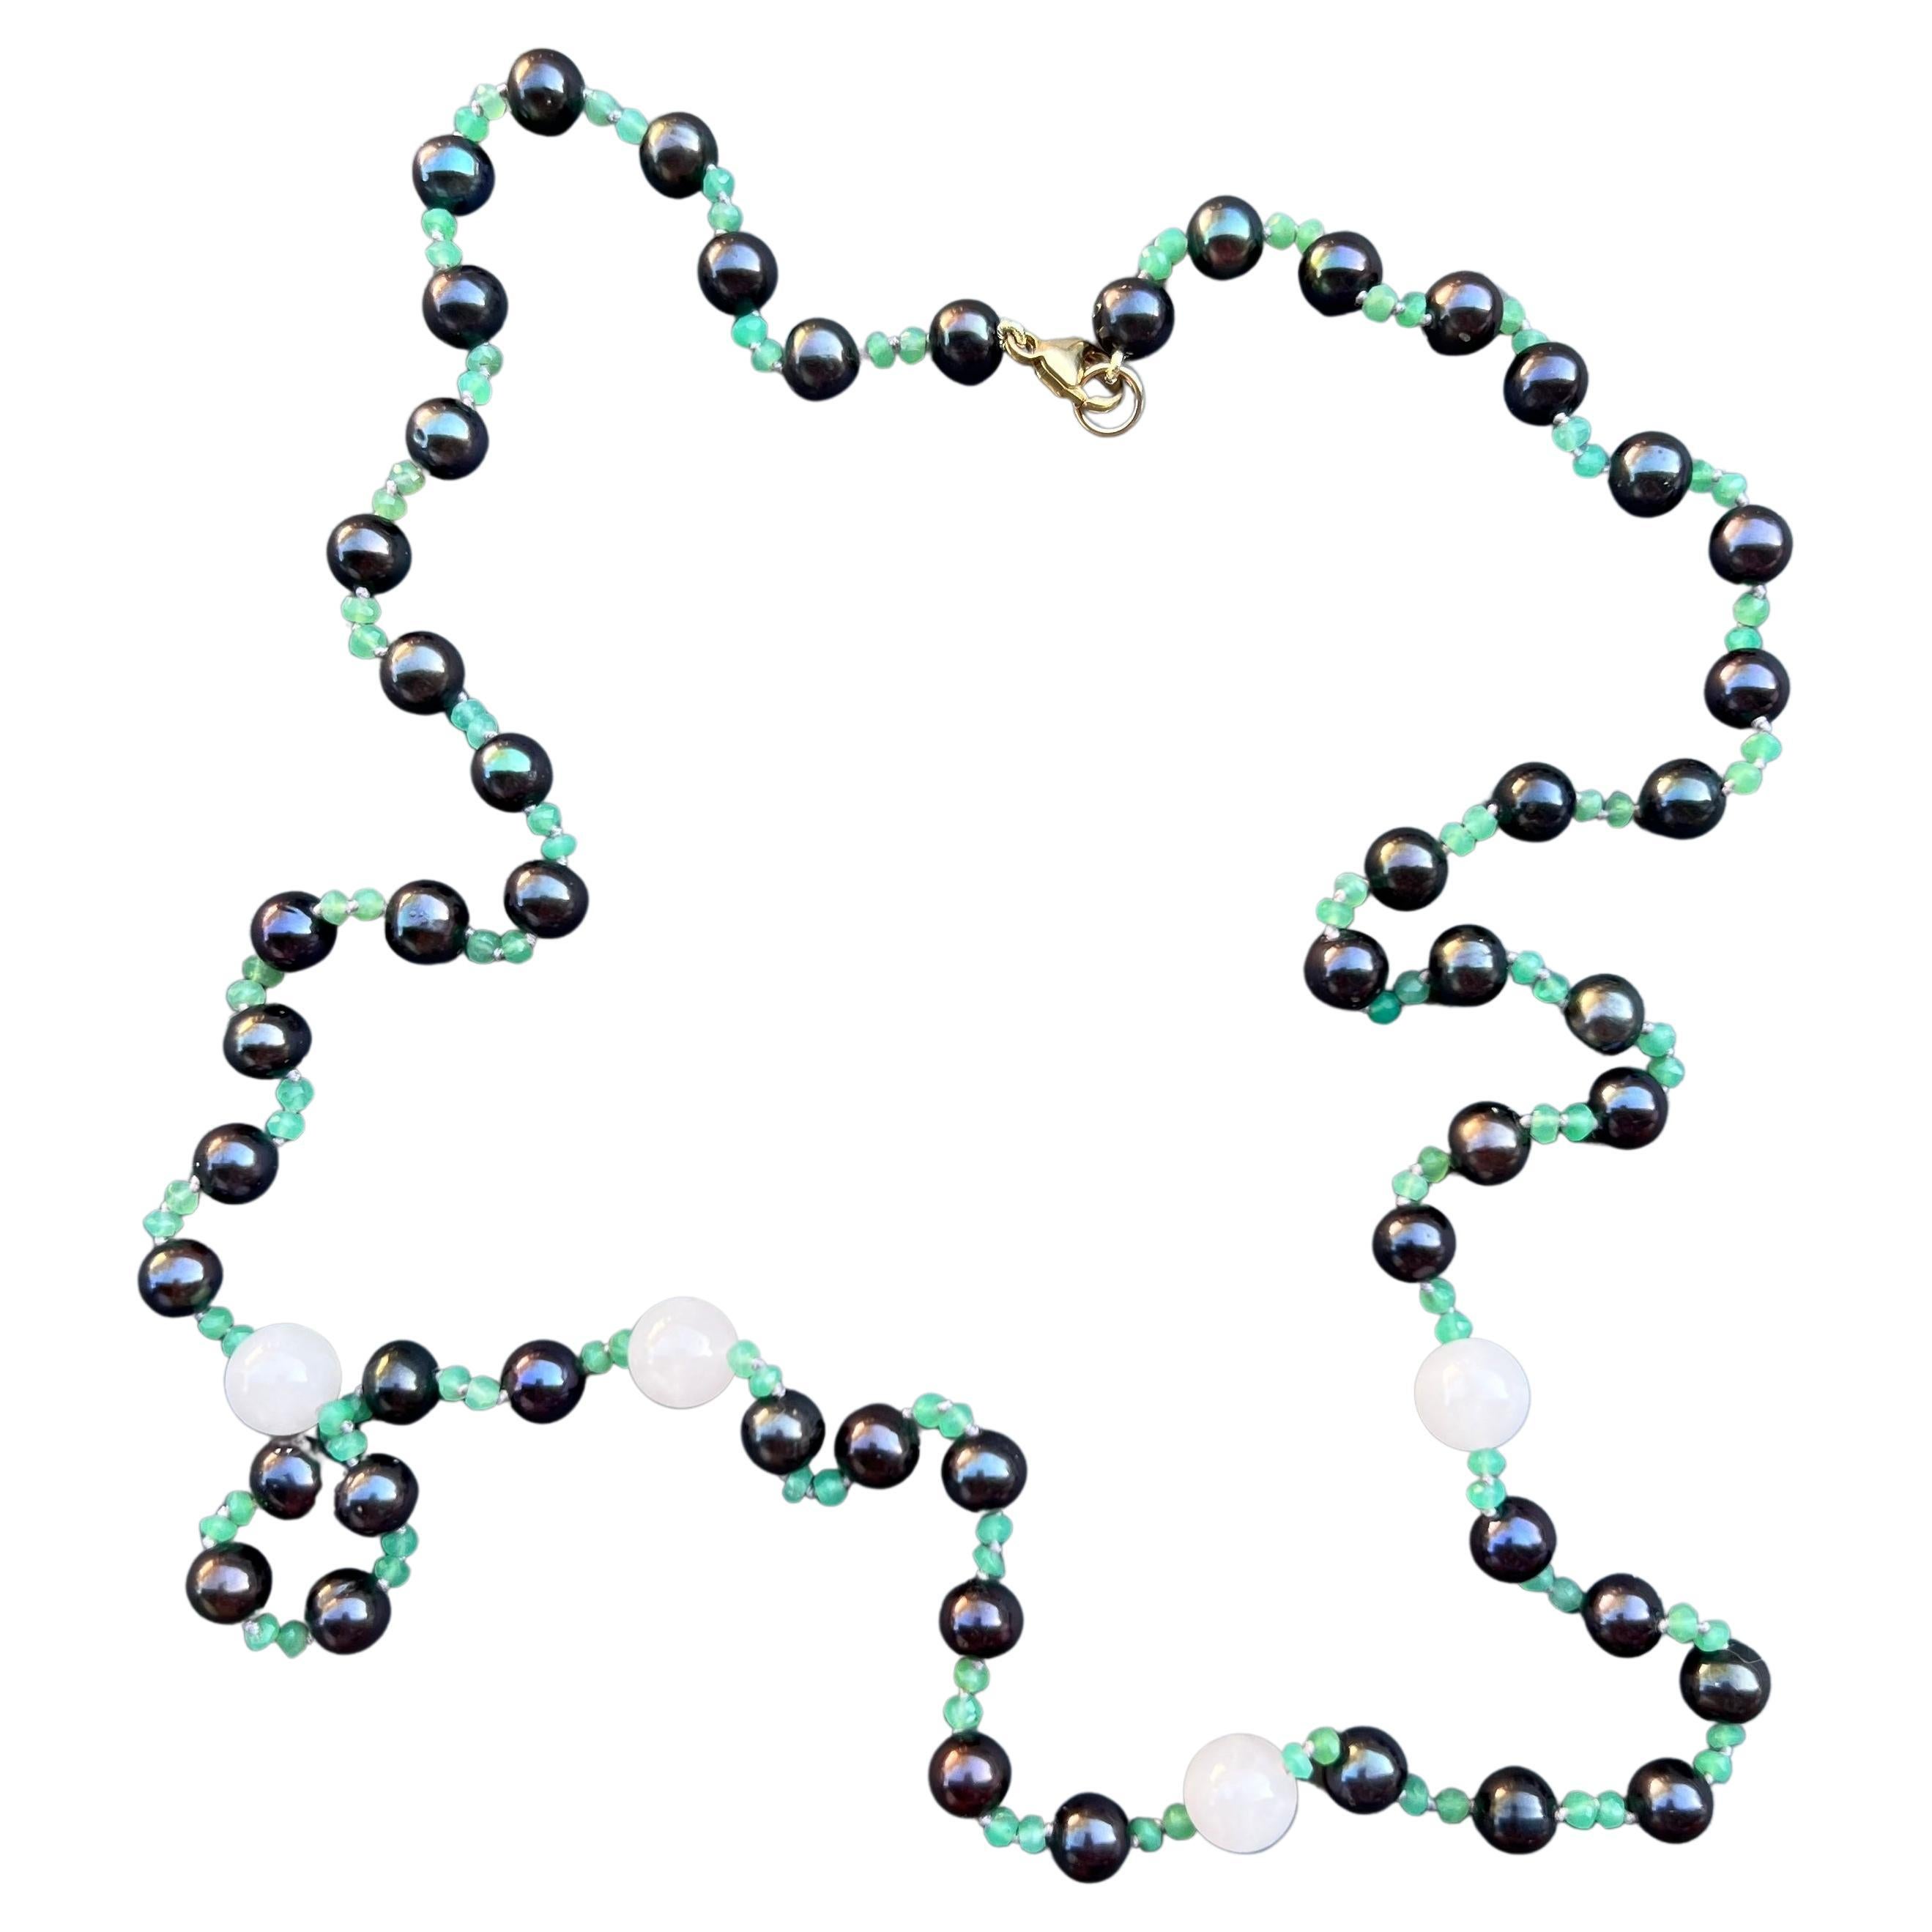 Halskette mit schwarzer Perle, Chrysopras, Quarz und Perlen, J Dauphin